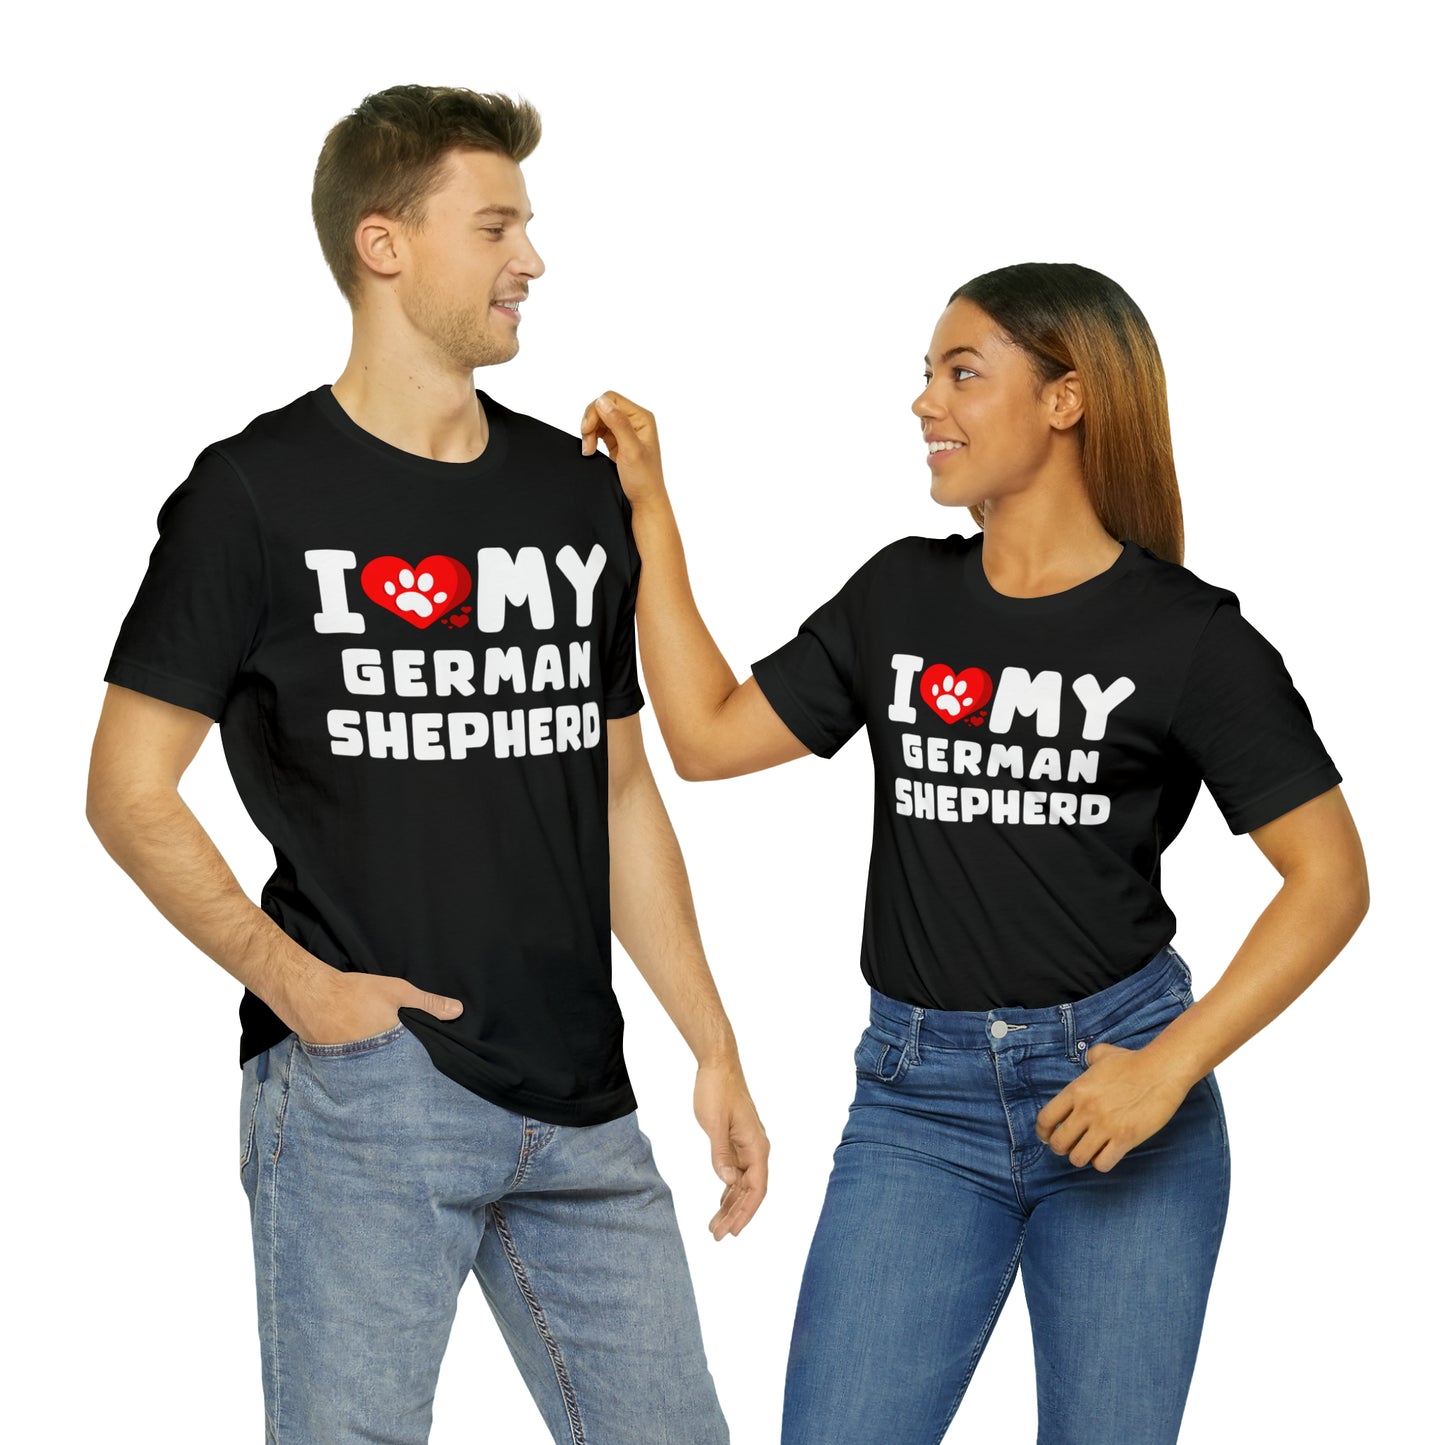 I Love My German Shepherd Gift Shirt for Men or Women, Dog Lover gift t-shirt